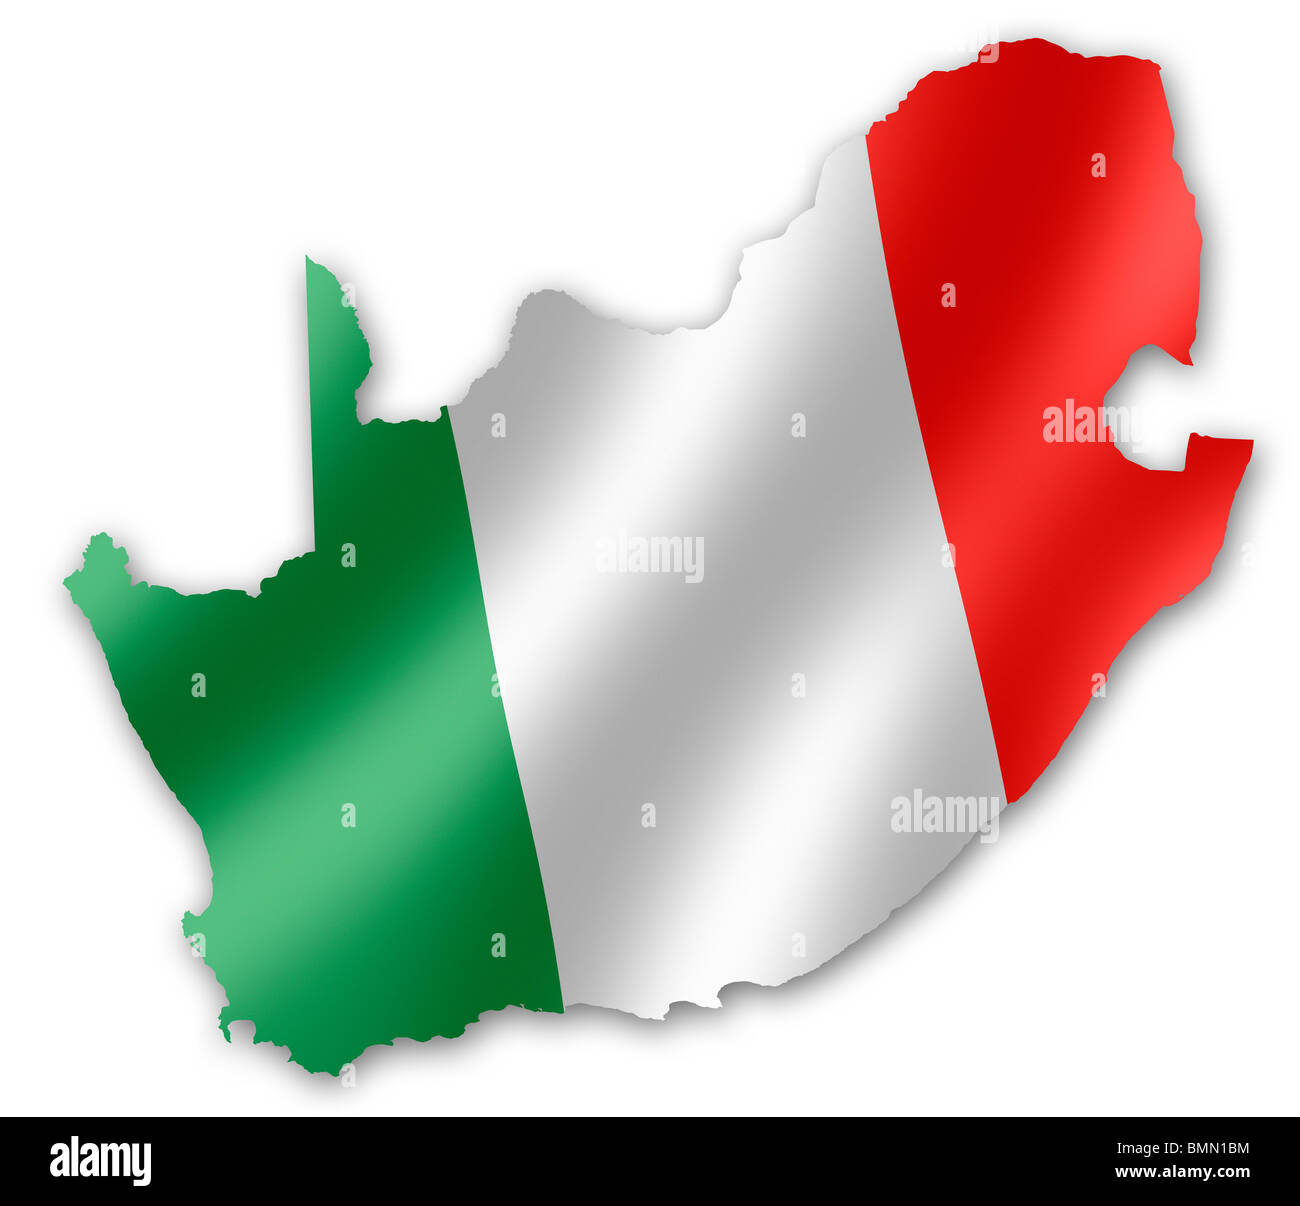 Mappa del Sud Africa con la bandiera italiana inset, per la Coppa del Mondo FIFA 2010 Football Foto Stock